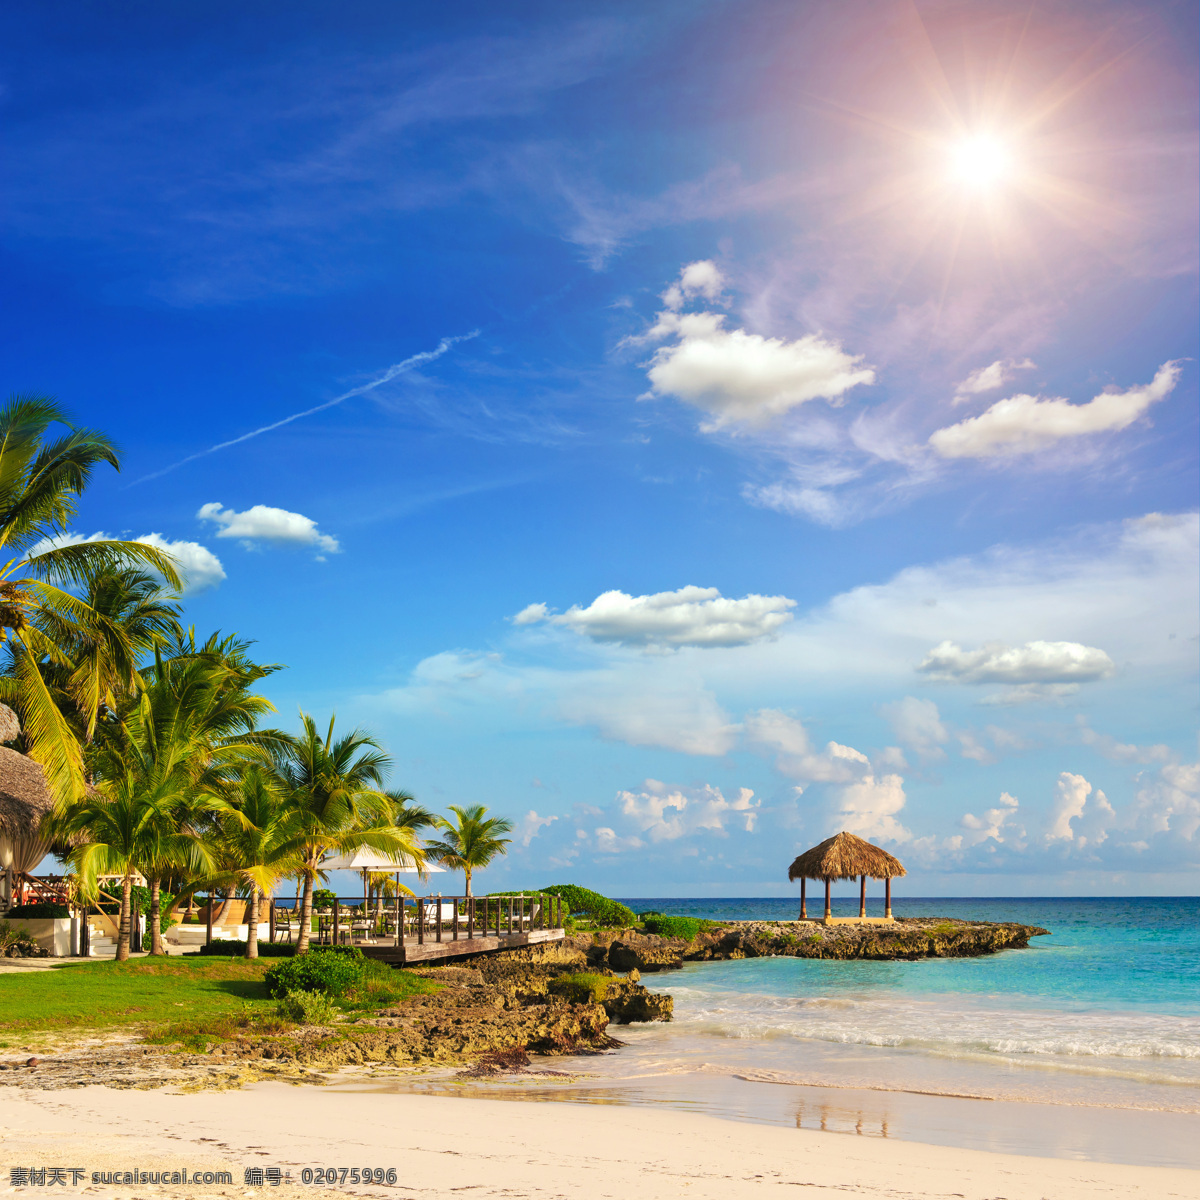 海边 度假村 植物 椰子树 大海 沙滩 蓝天白云 自然风光 休闲旅游 旅游景区 其他类别 环境家居